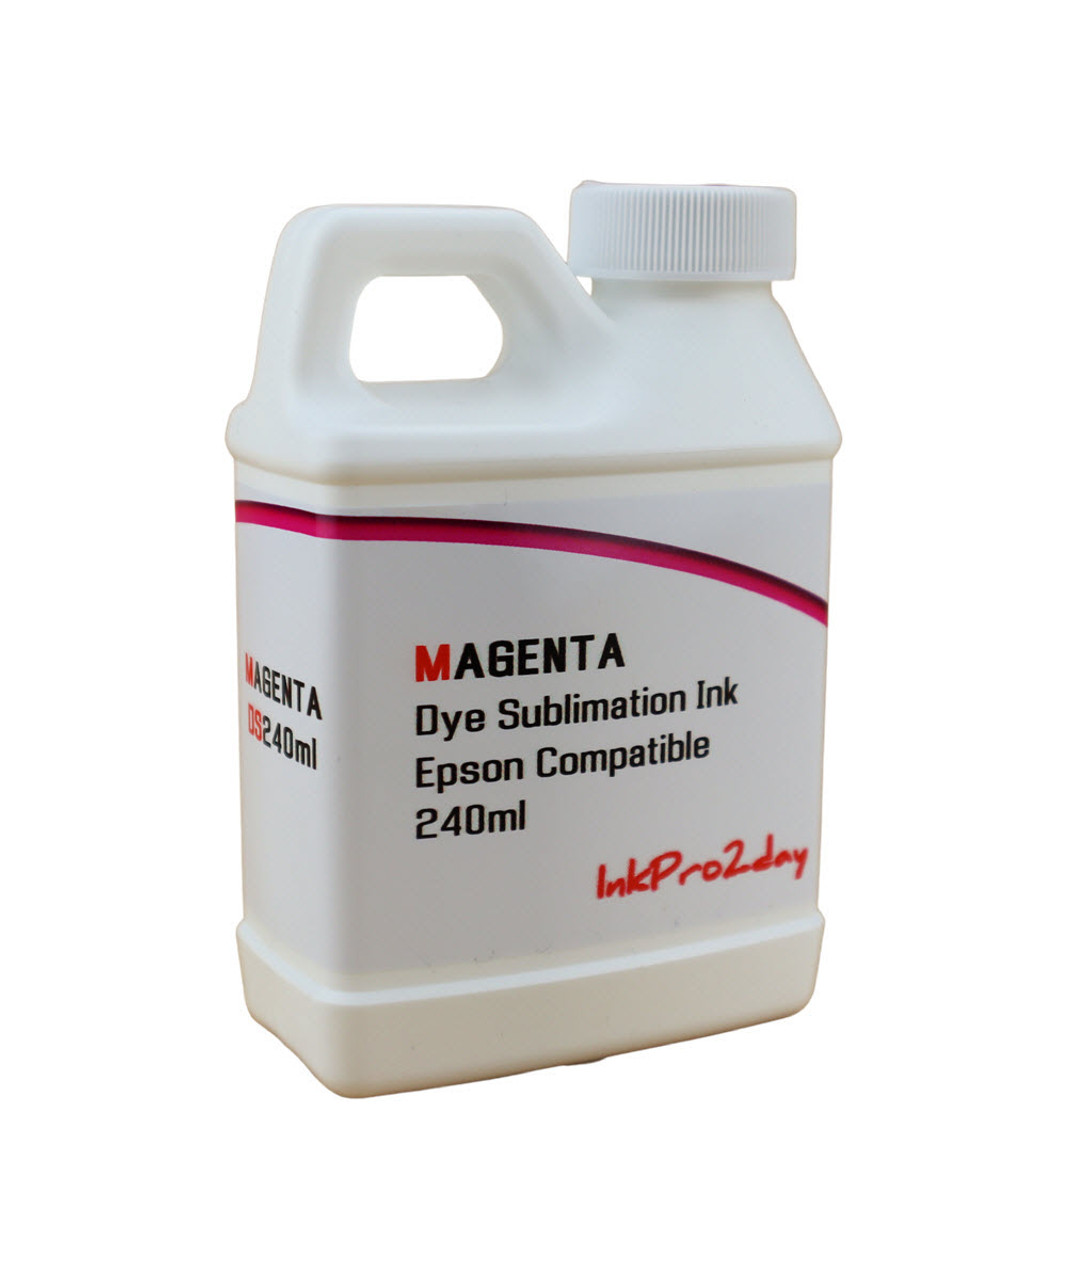 Magenta 240ml bottle Dye Sublimation Ink for Epson WorkForce WF-7210, WorkForce WF-7710, WorkForce WF-7720 Printers